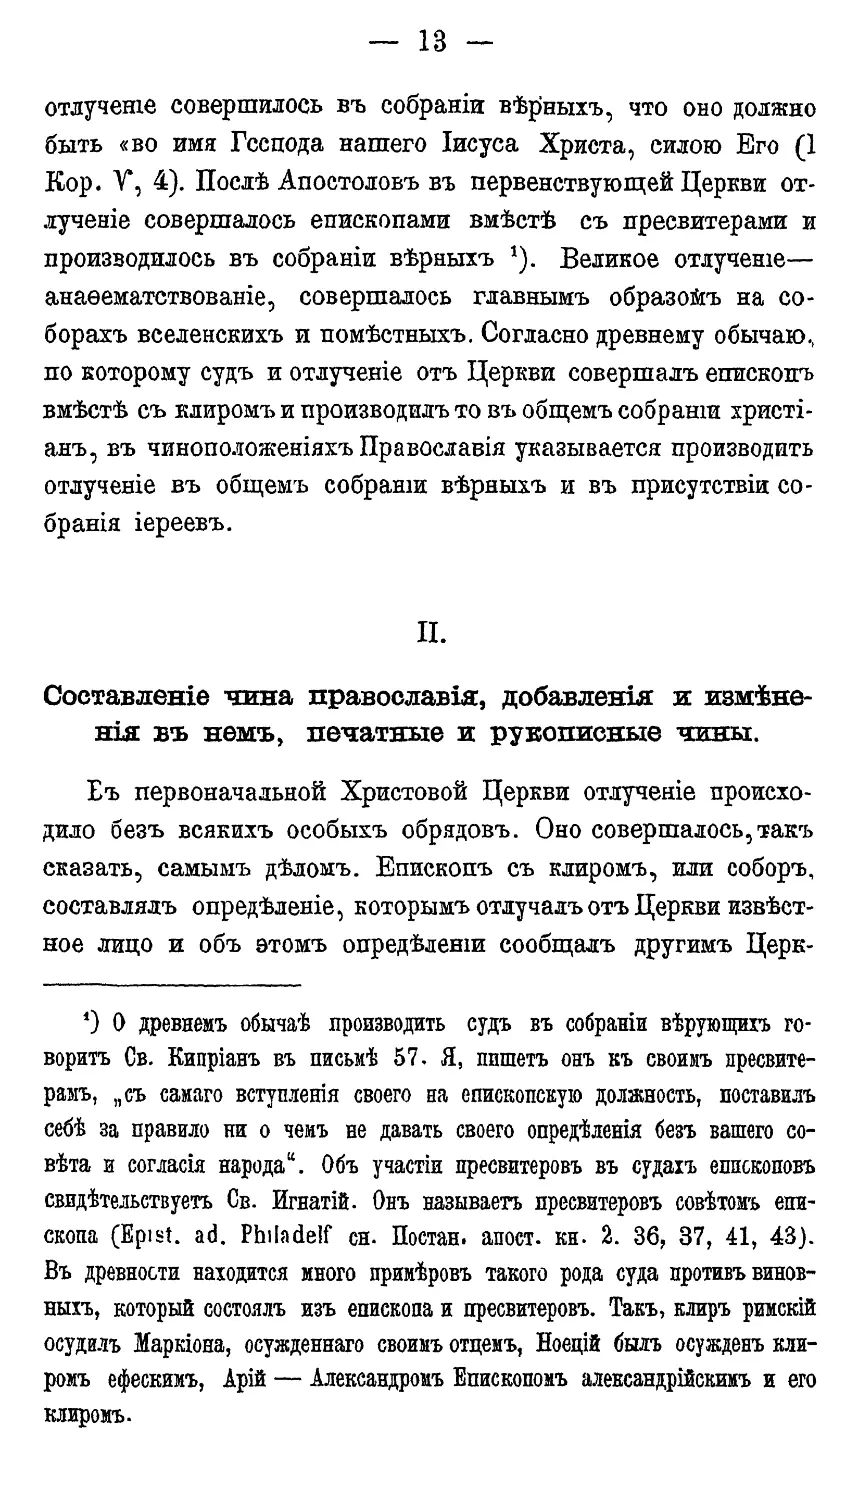 II. Составление чина Православия, добавления и изменения в нем, печатные и рукописные чины